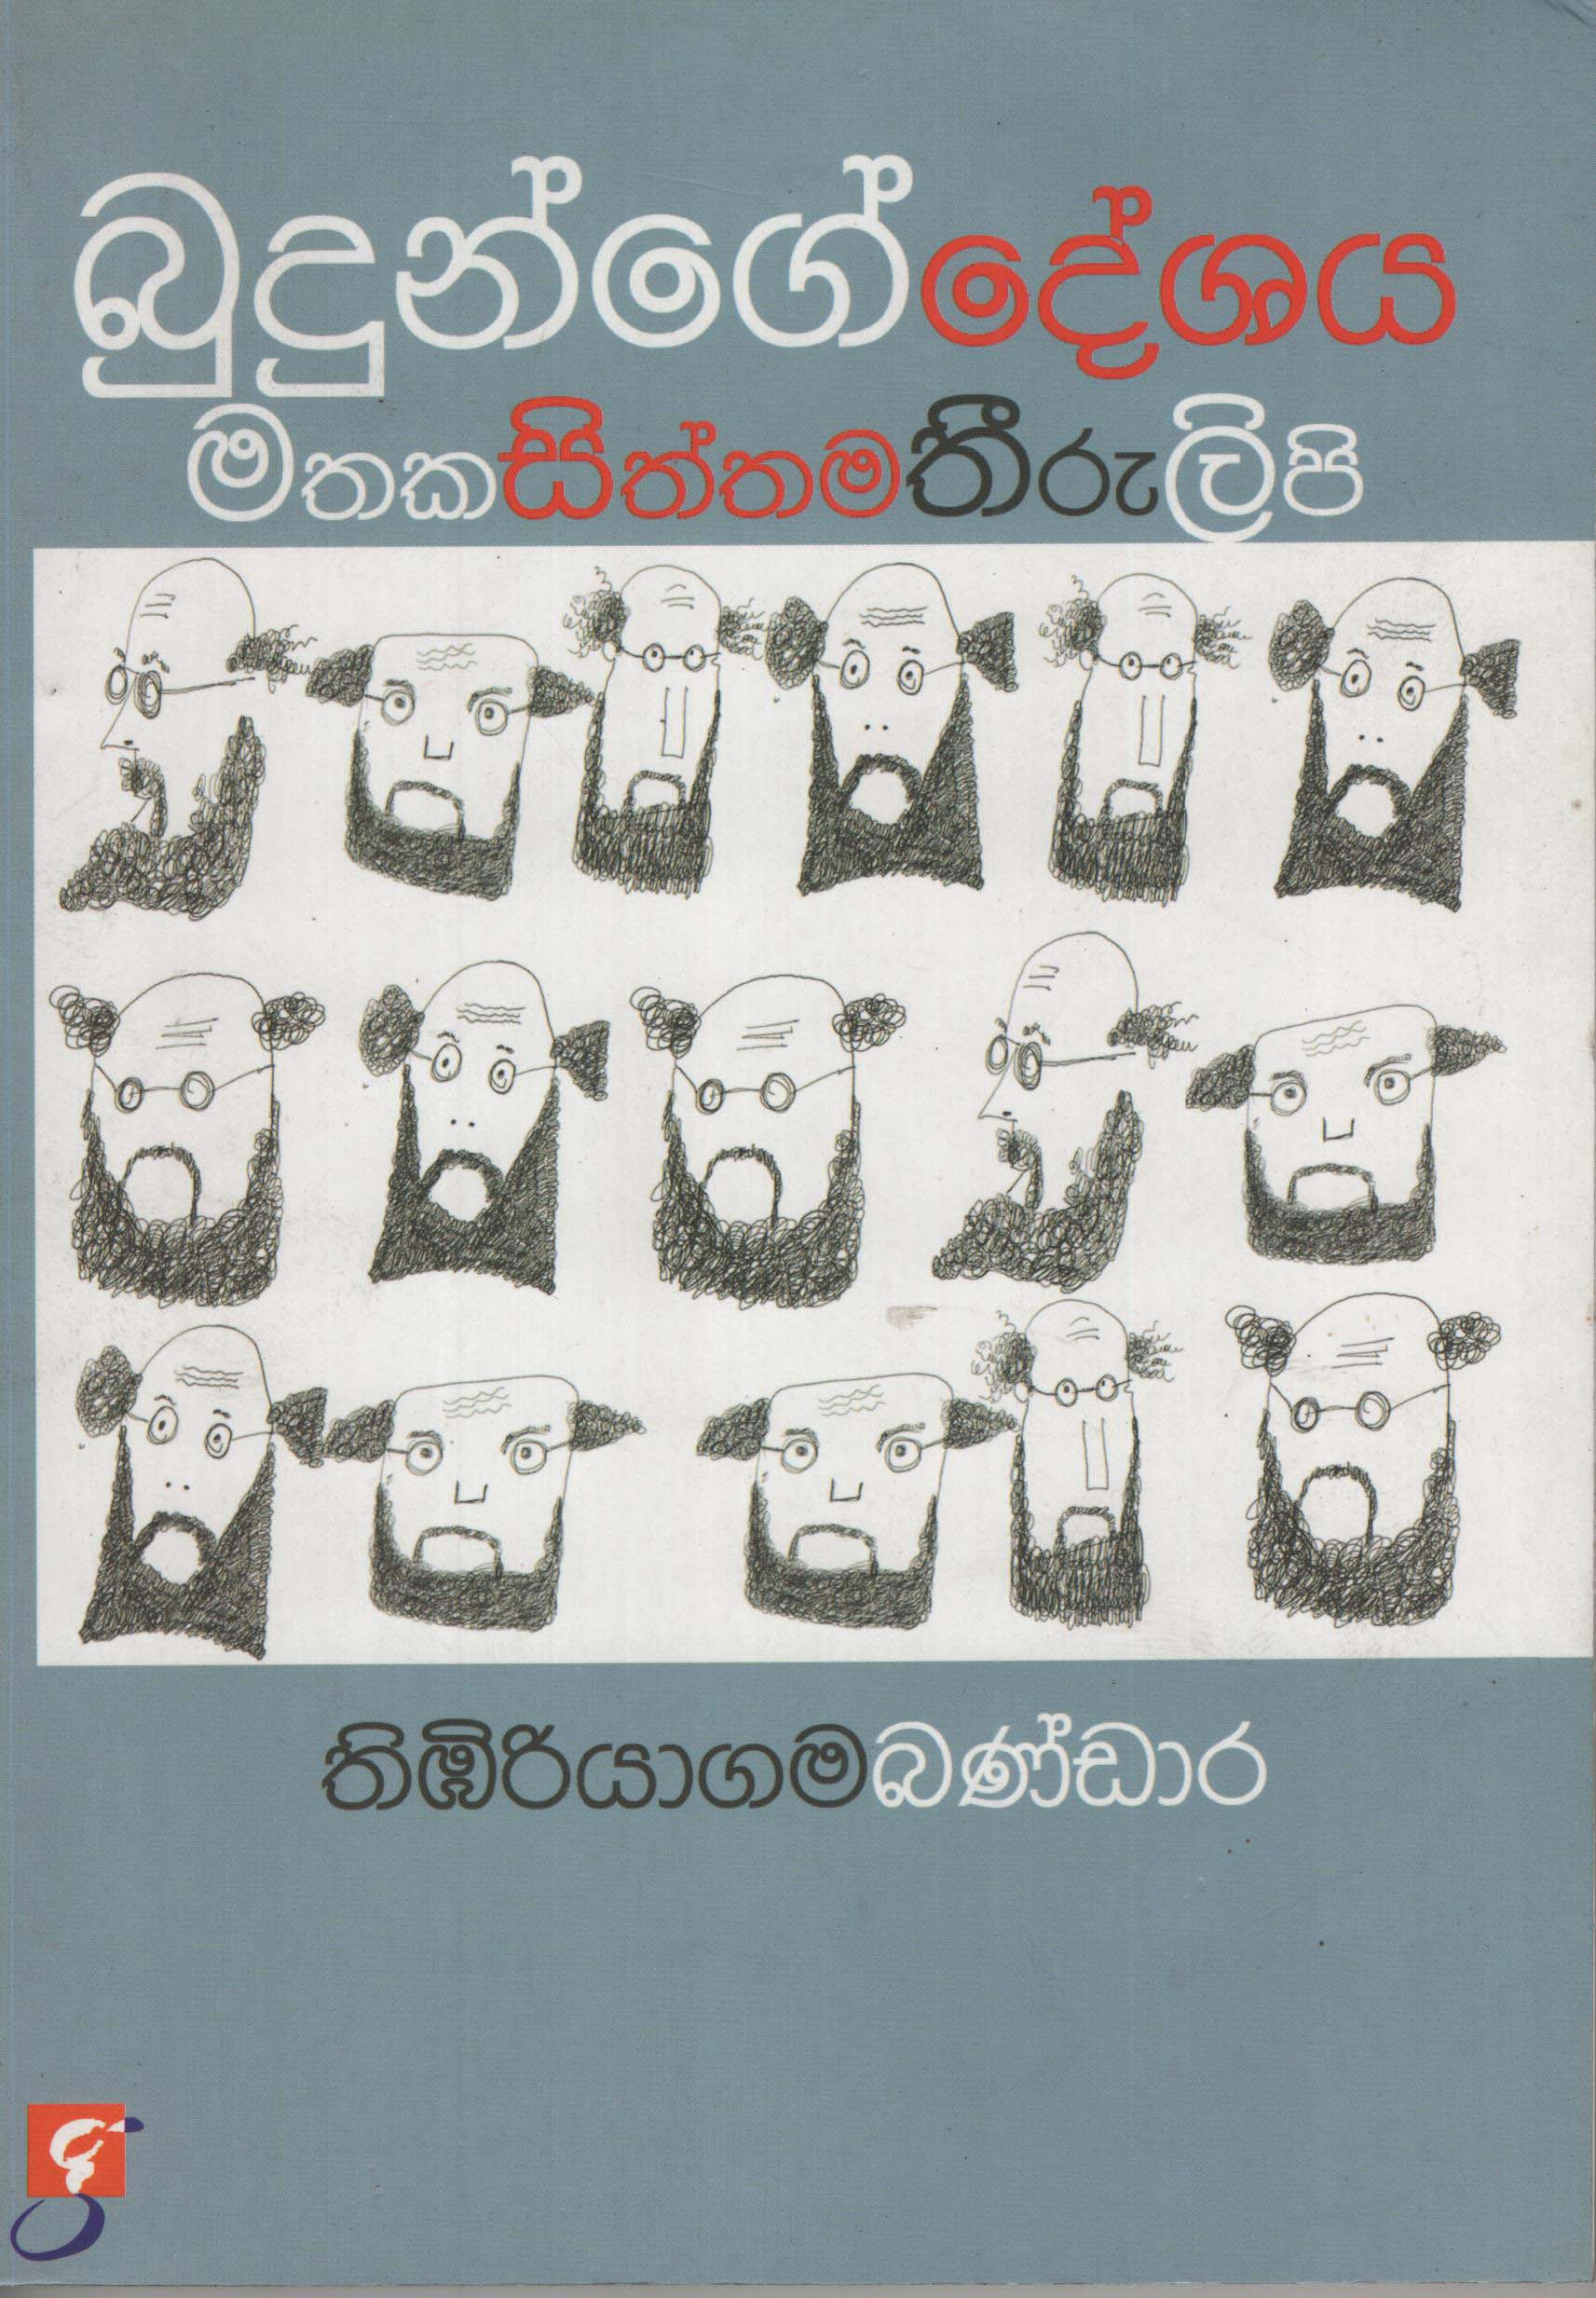 Budunge Deshaya Mathaka Siththama Thiru Lipi